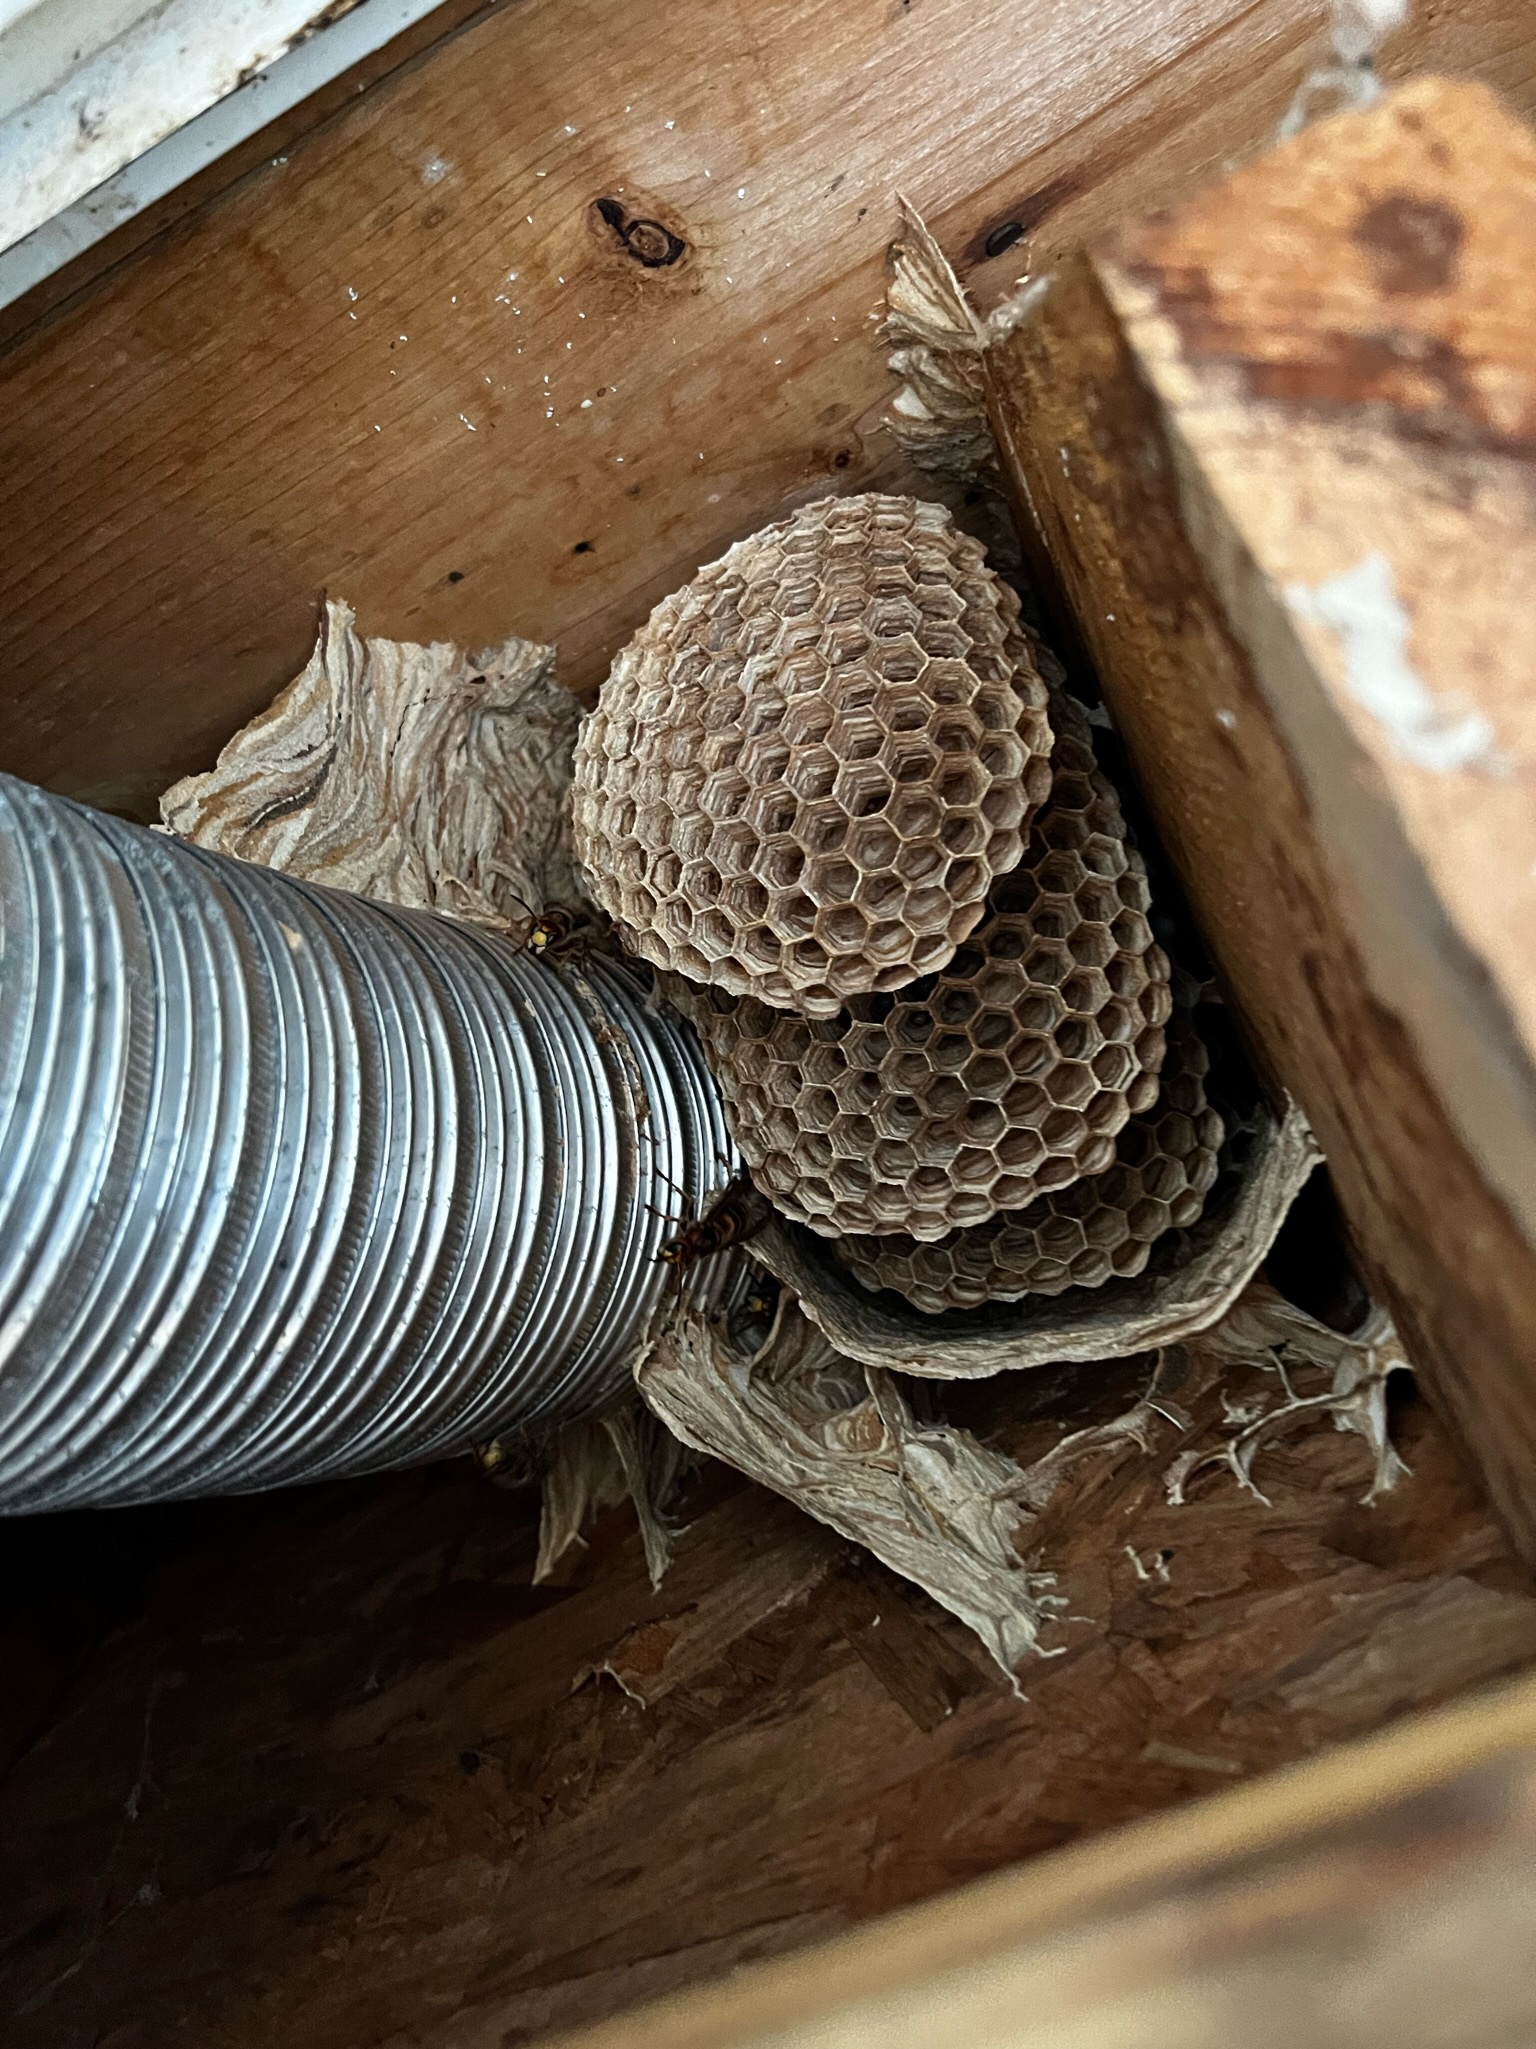 european hornets - alpharetta hive removal